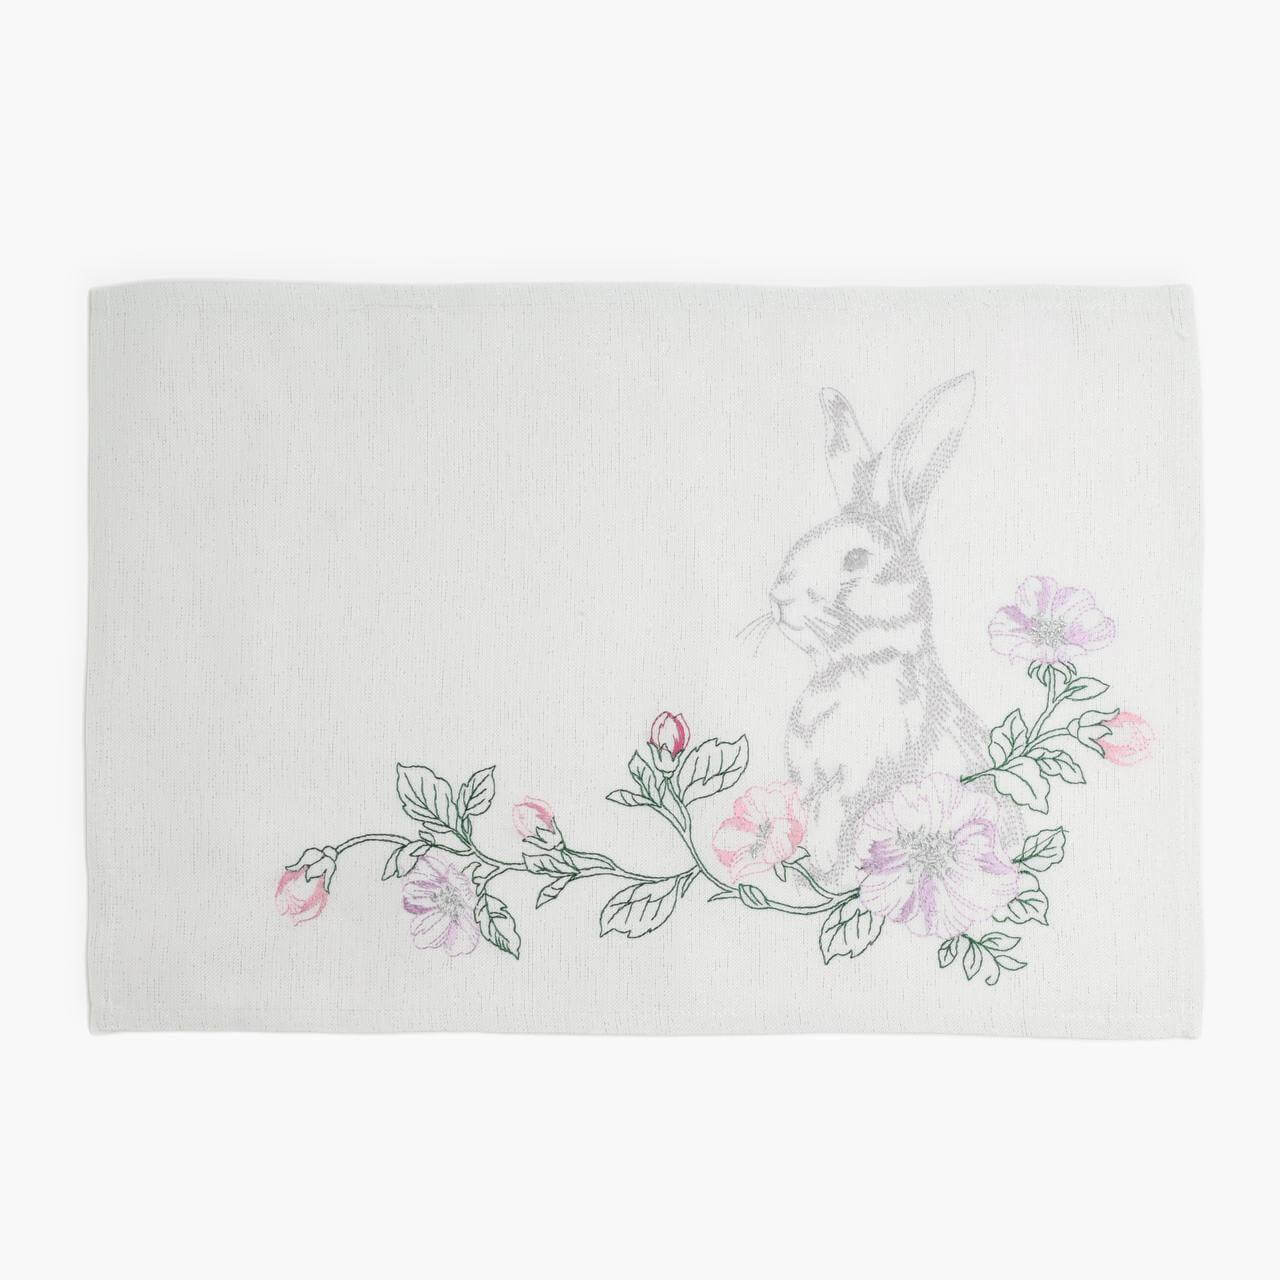 Салфетка под приборы, 30x45 см, полиэстер, прямоугольная, белая, Кролик в цветах, Pure Easter салфетка laima